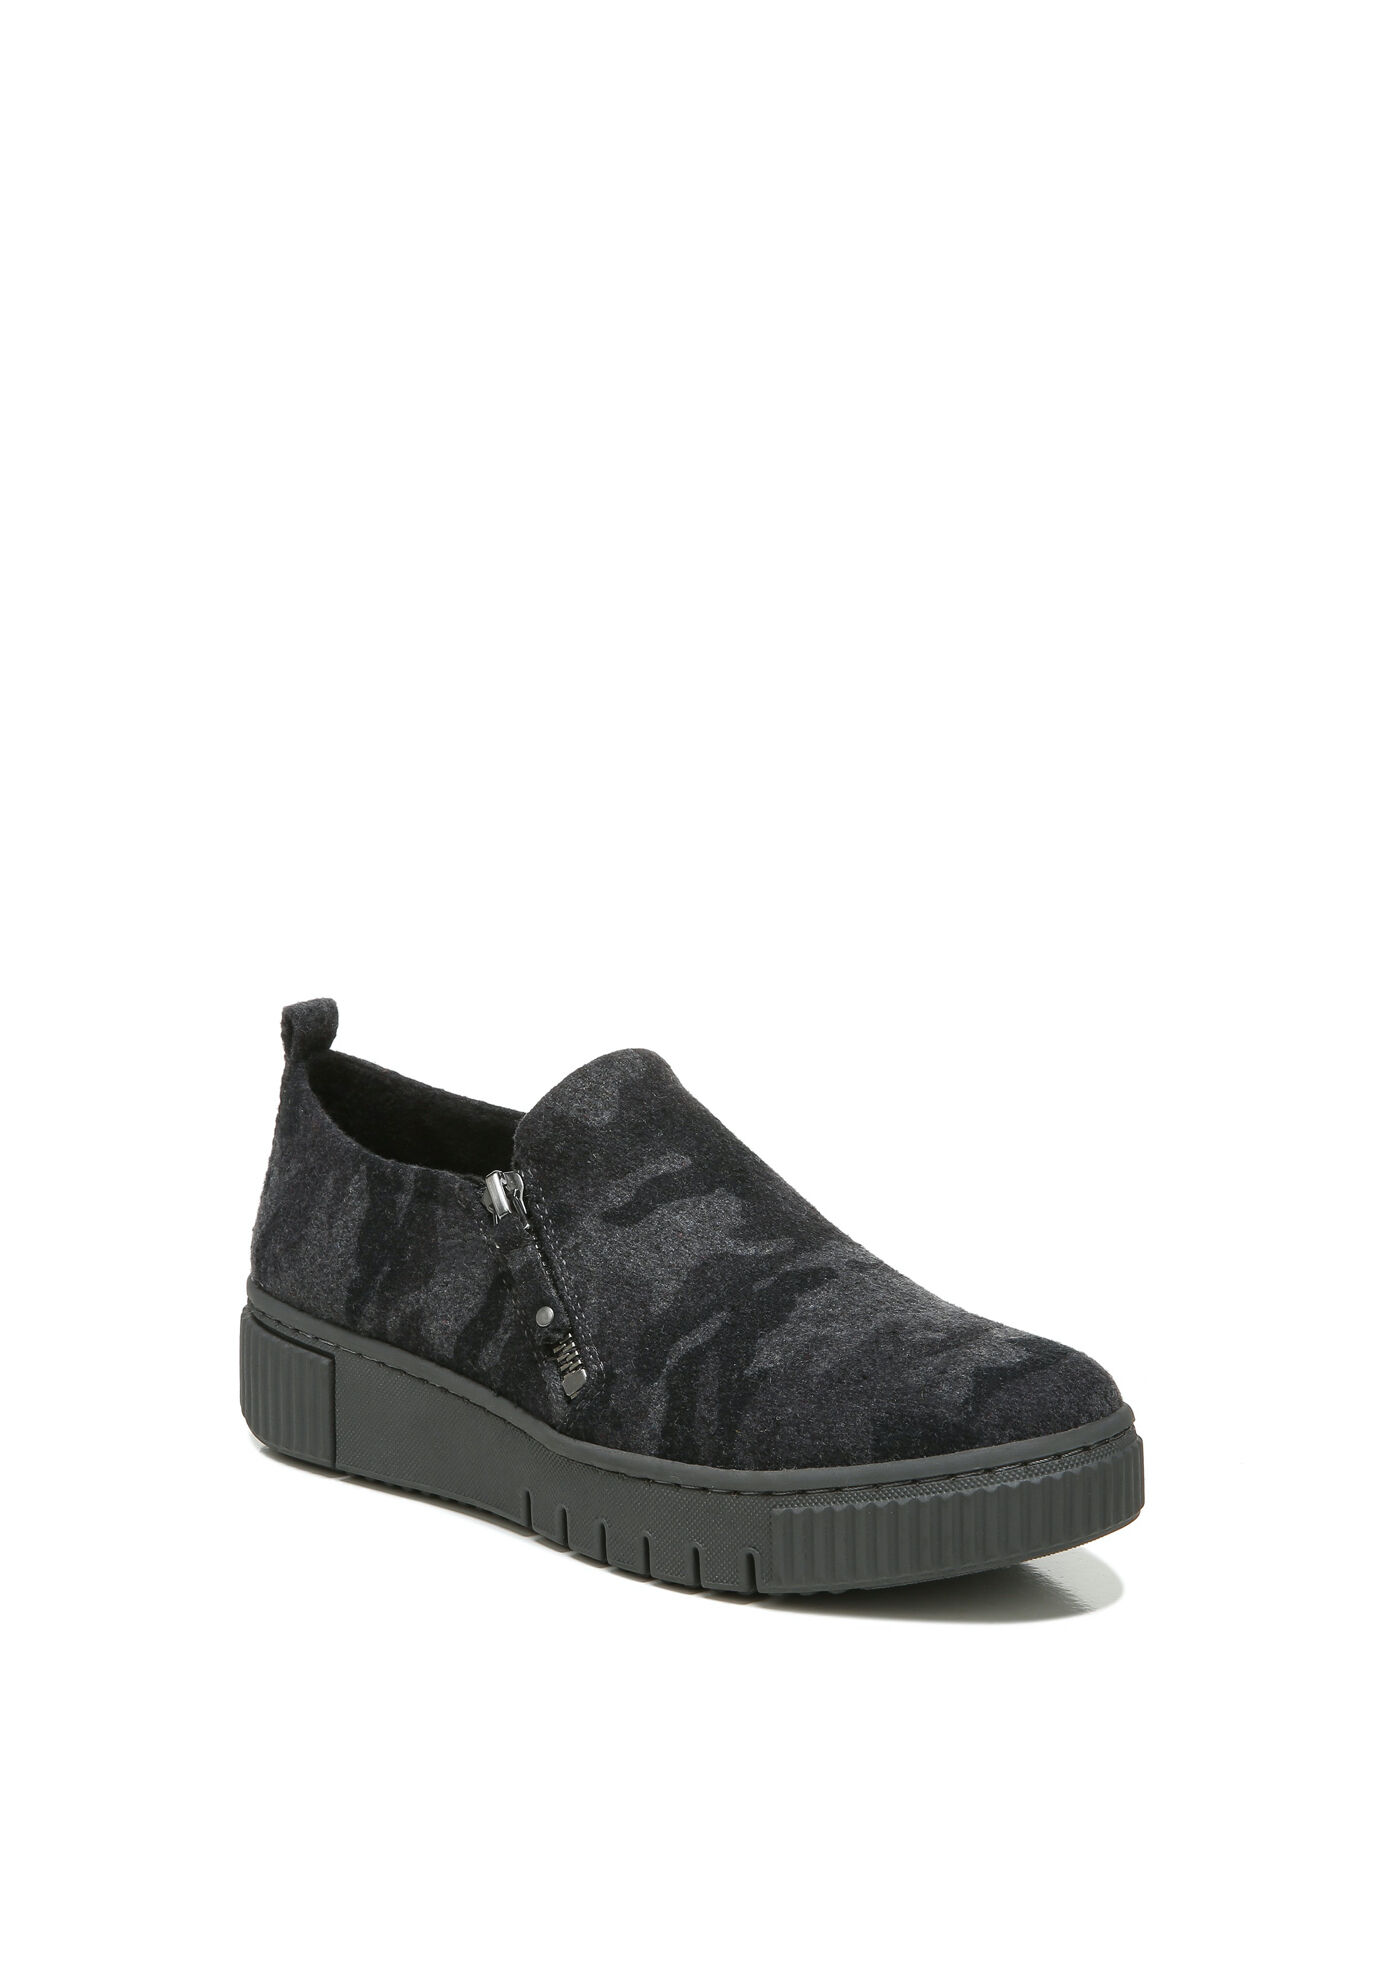 Wide Width Women's Turner Slip On Sneaker by Roamans in Grey Camo (Size 7 1/2 W)